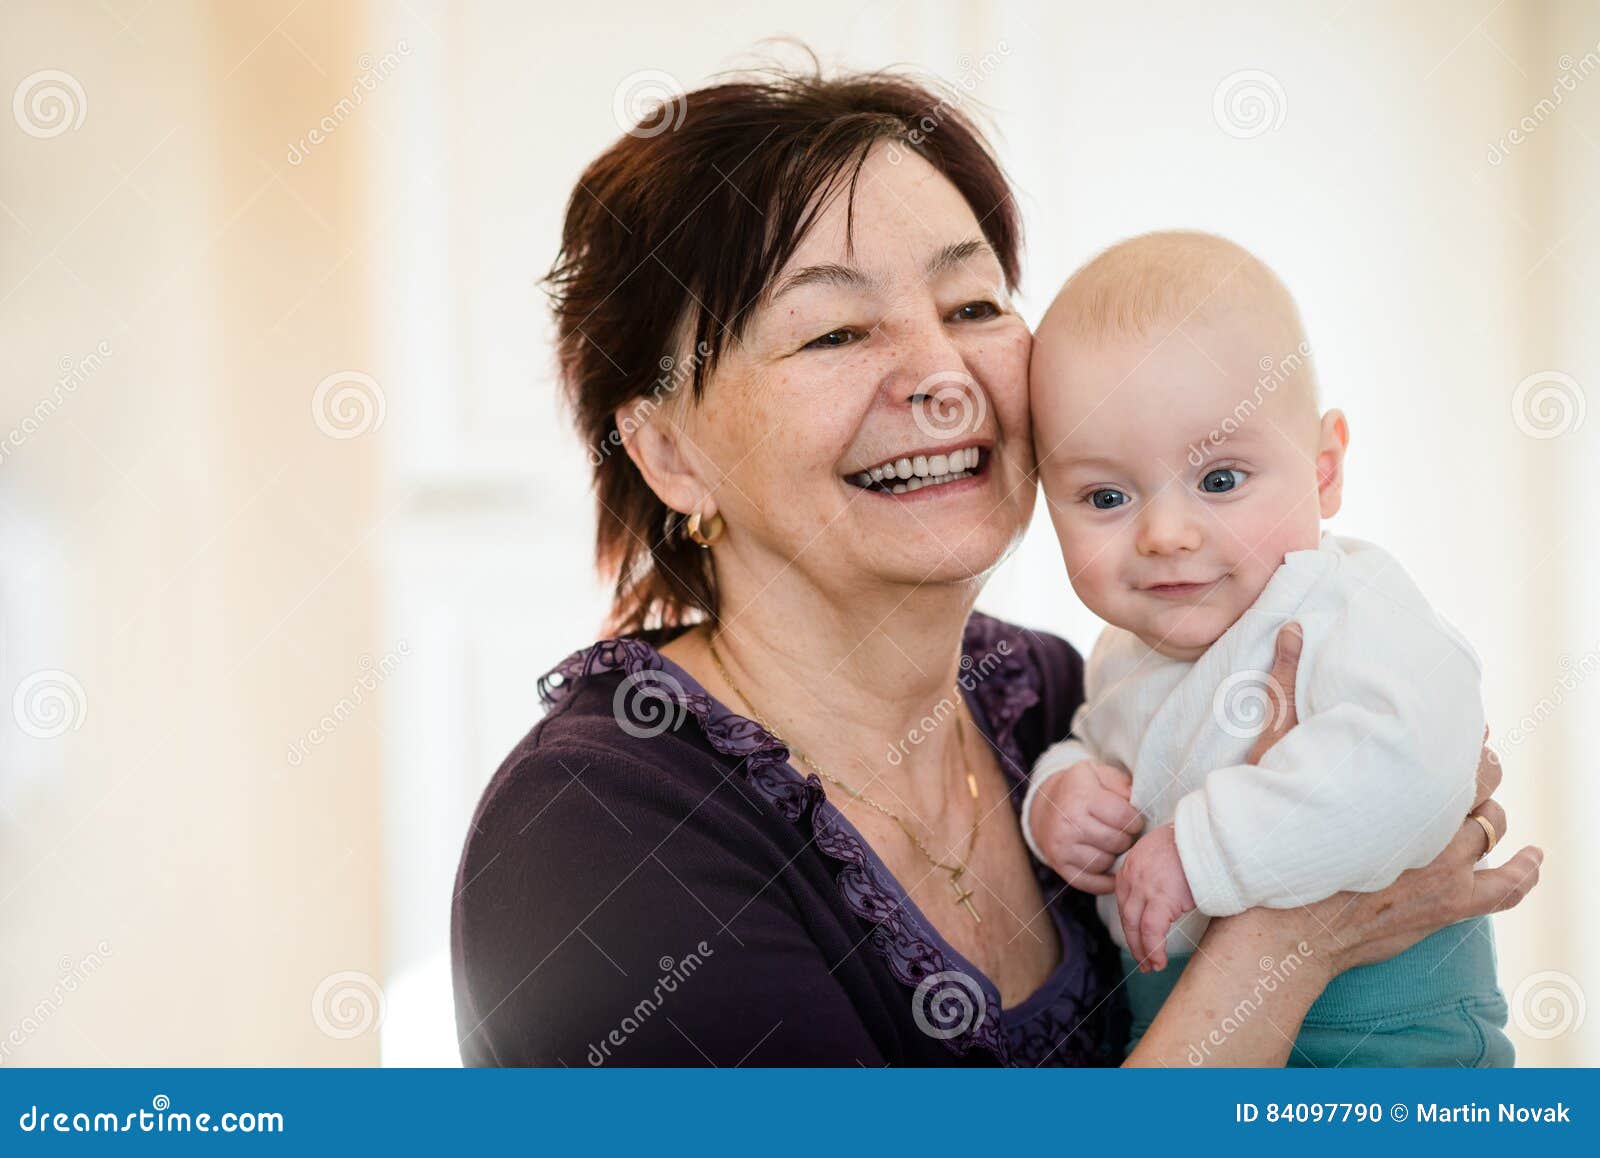 祖母和孙子 库存图片. 图片 包括有 祖父项, 婴儿, 拥抱, 年长, 背包, 查出, 逗人喜爱, 看顾 - 66769267